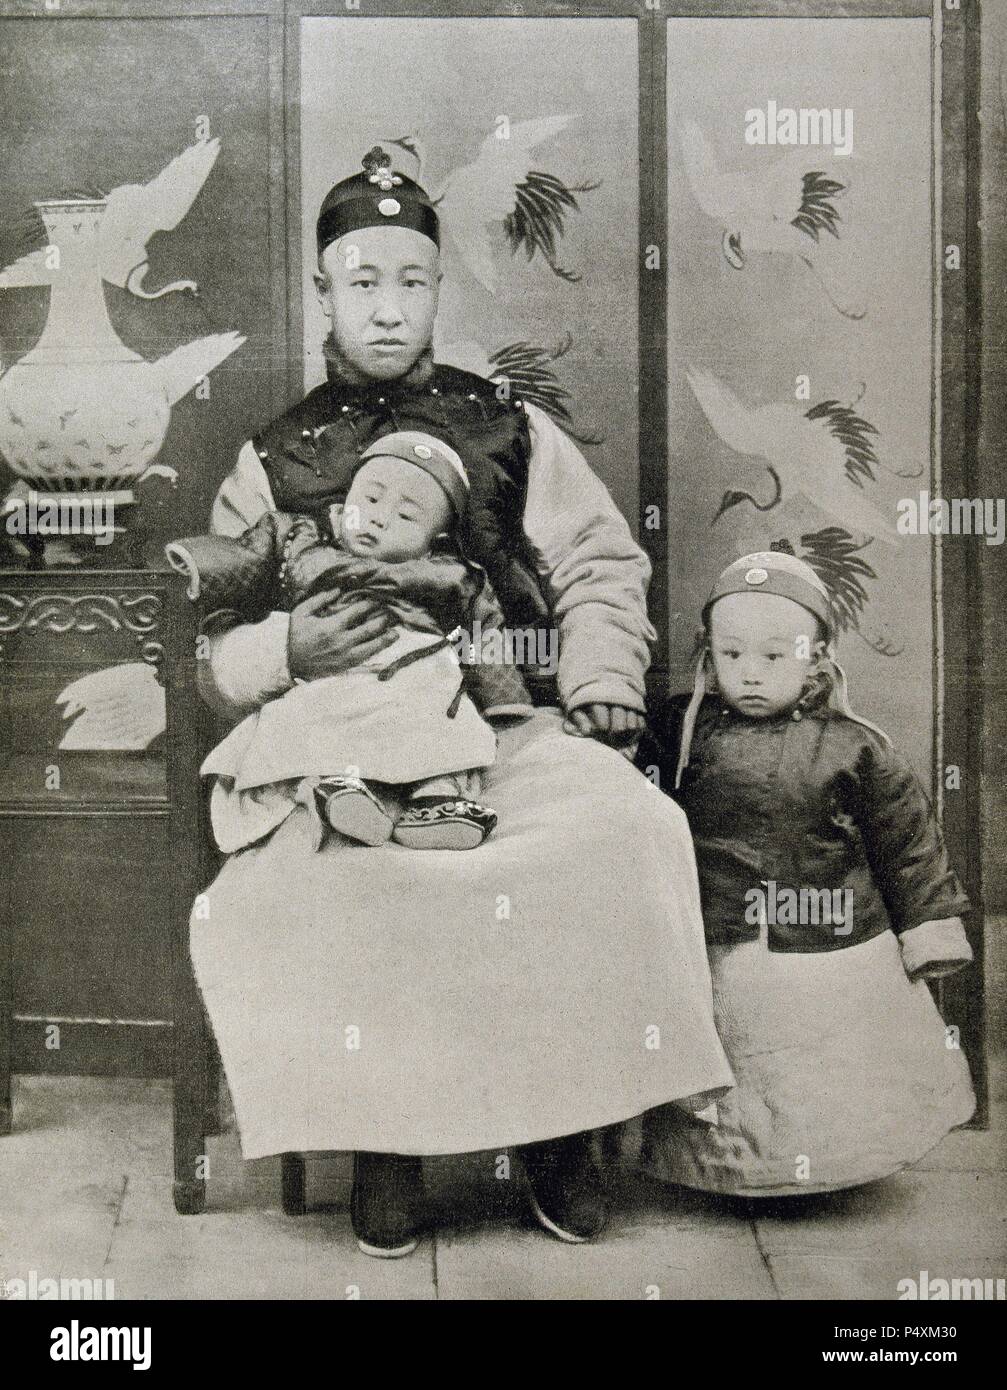 PU-YI (Pekín, 1906-1967). Emperador chino de la dinastía Qing. Fue nombrador sucesor de su tío Kuang-su con sólo dos años y, debido a su minoría de edad, fue su padre quien ejerció de regente. En 1911 la revolución nacionalista proclamó la República y obligó a Pu-yi a abdicar en 1912. Emperador de Manchuria (1934-1945). 'PU-YI (derecha) CON SU PADRE Y SU HERMANO MENOR'. Stock Photo